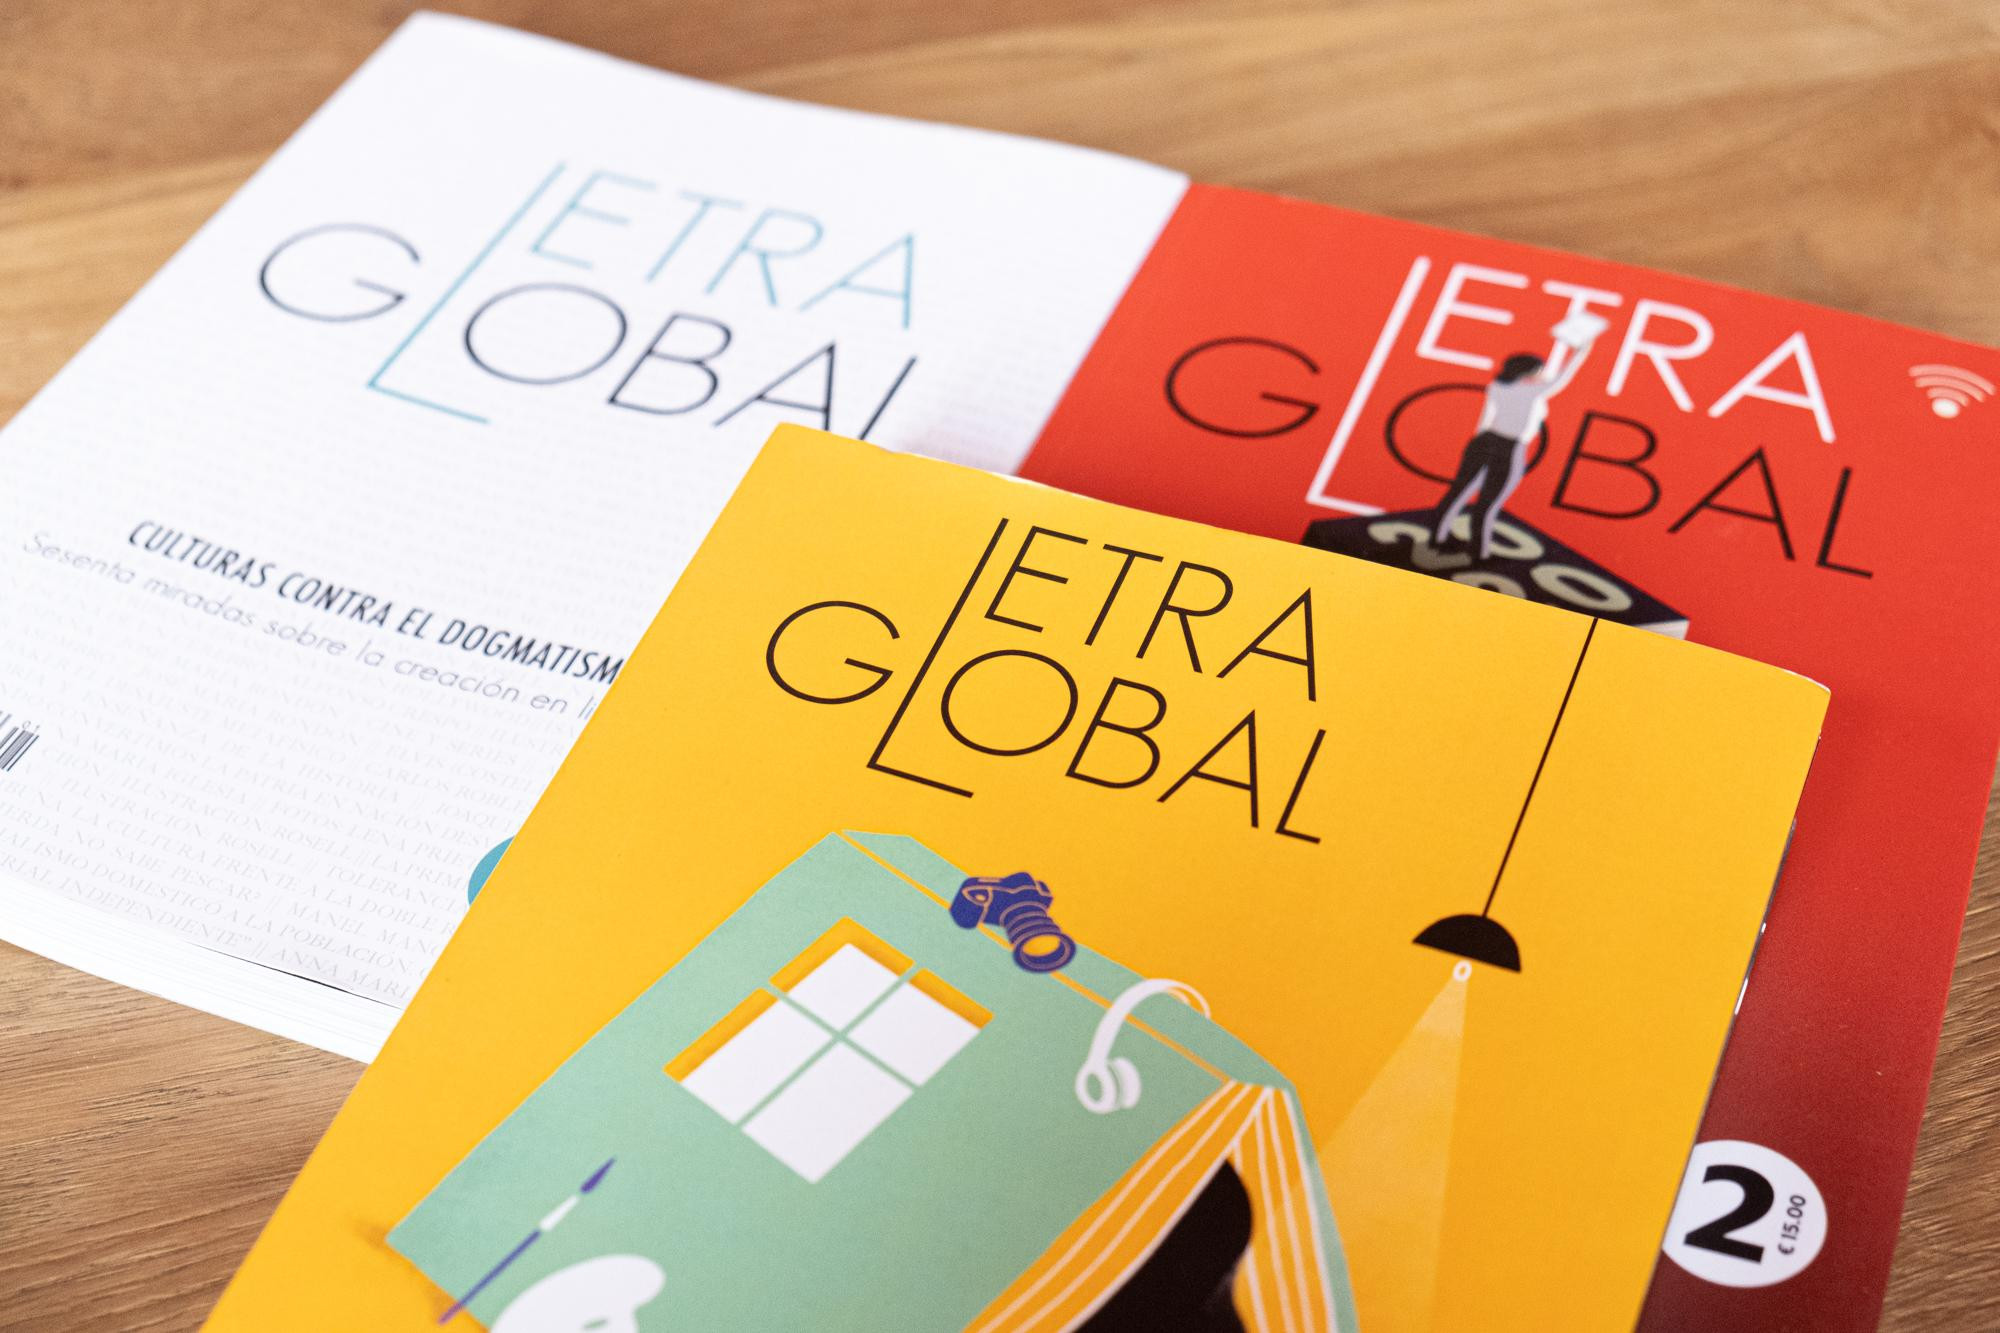 Nuevo ejemplar de Letra Global / CG